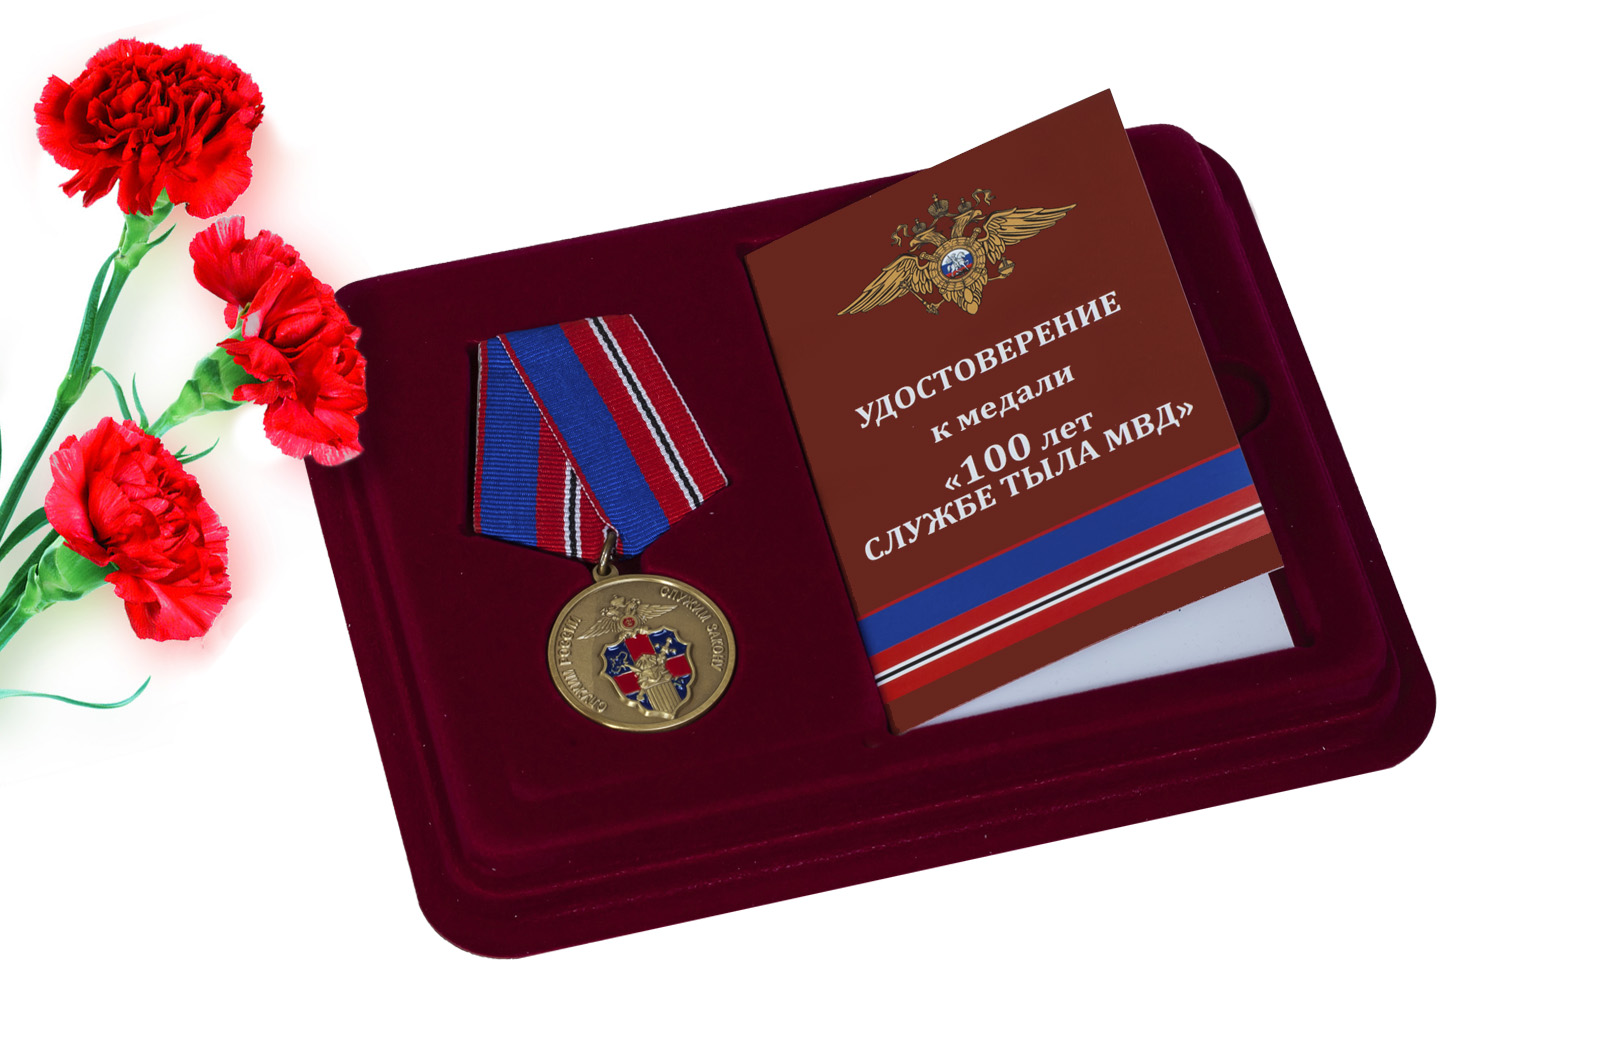 Купить медаль Служба Тыла МВД России оптом или в розницу